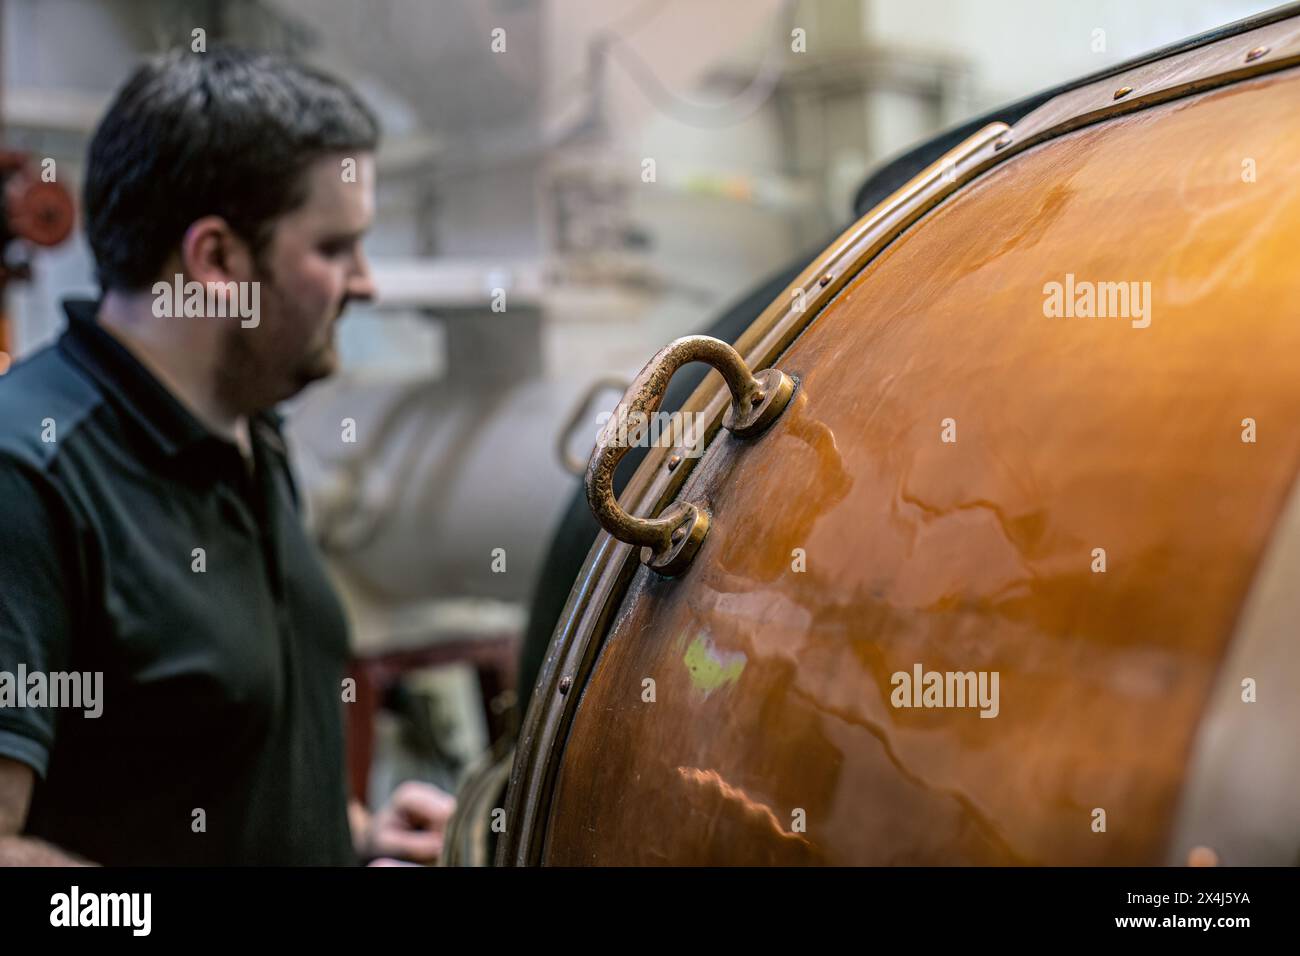 La pasta viene riempita con orzo ammollato e il lievito viene aggiunto per iniziare la fermentazione presso la distilleria Glengoyne - Dungoyne, Stirlingshire, Scozia, UK Foto Stock